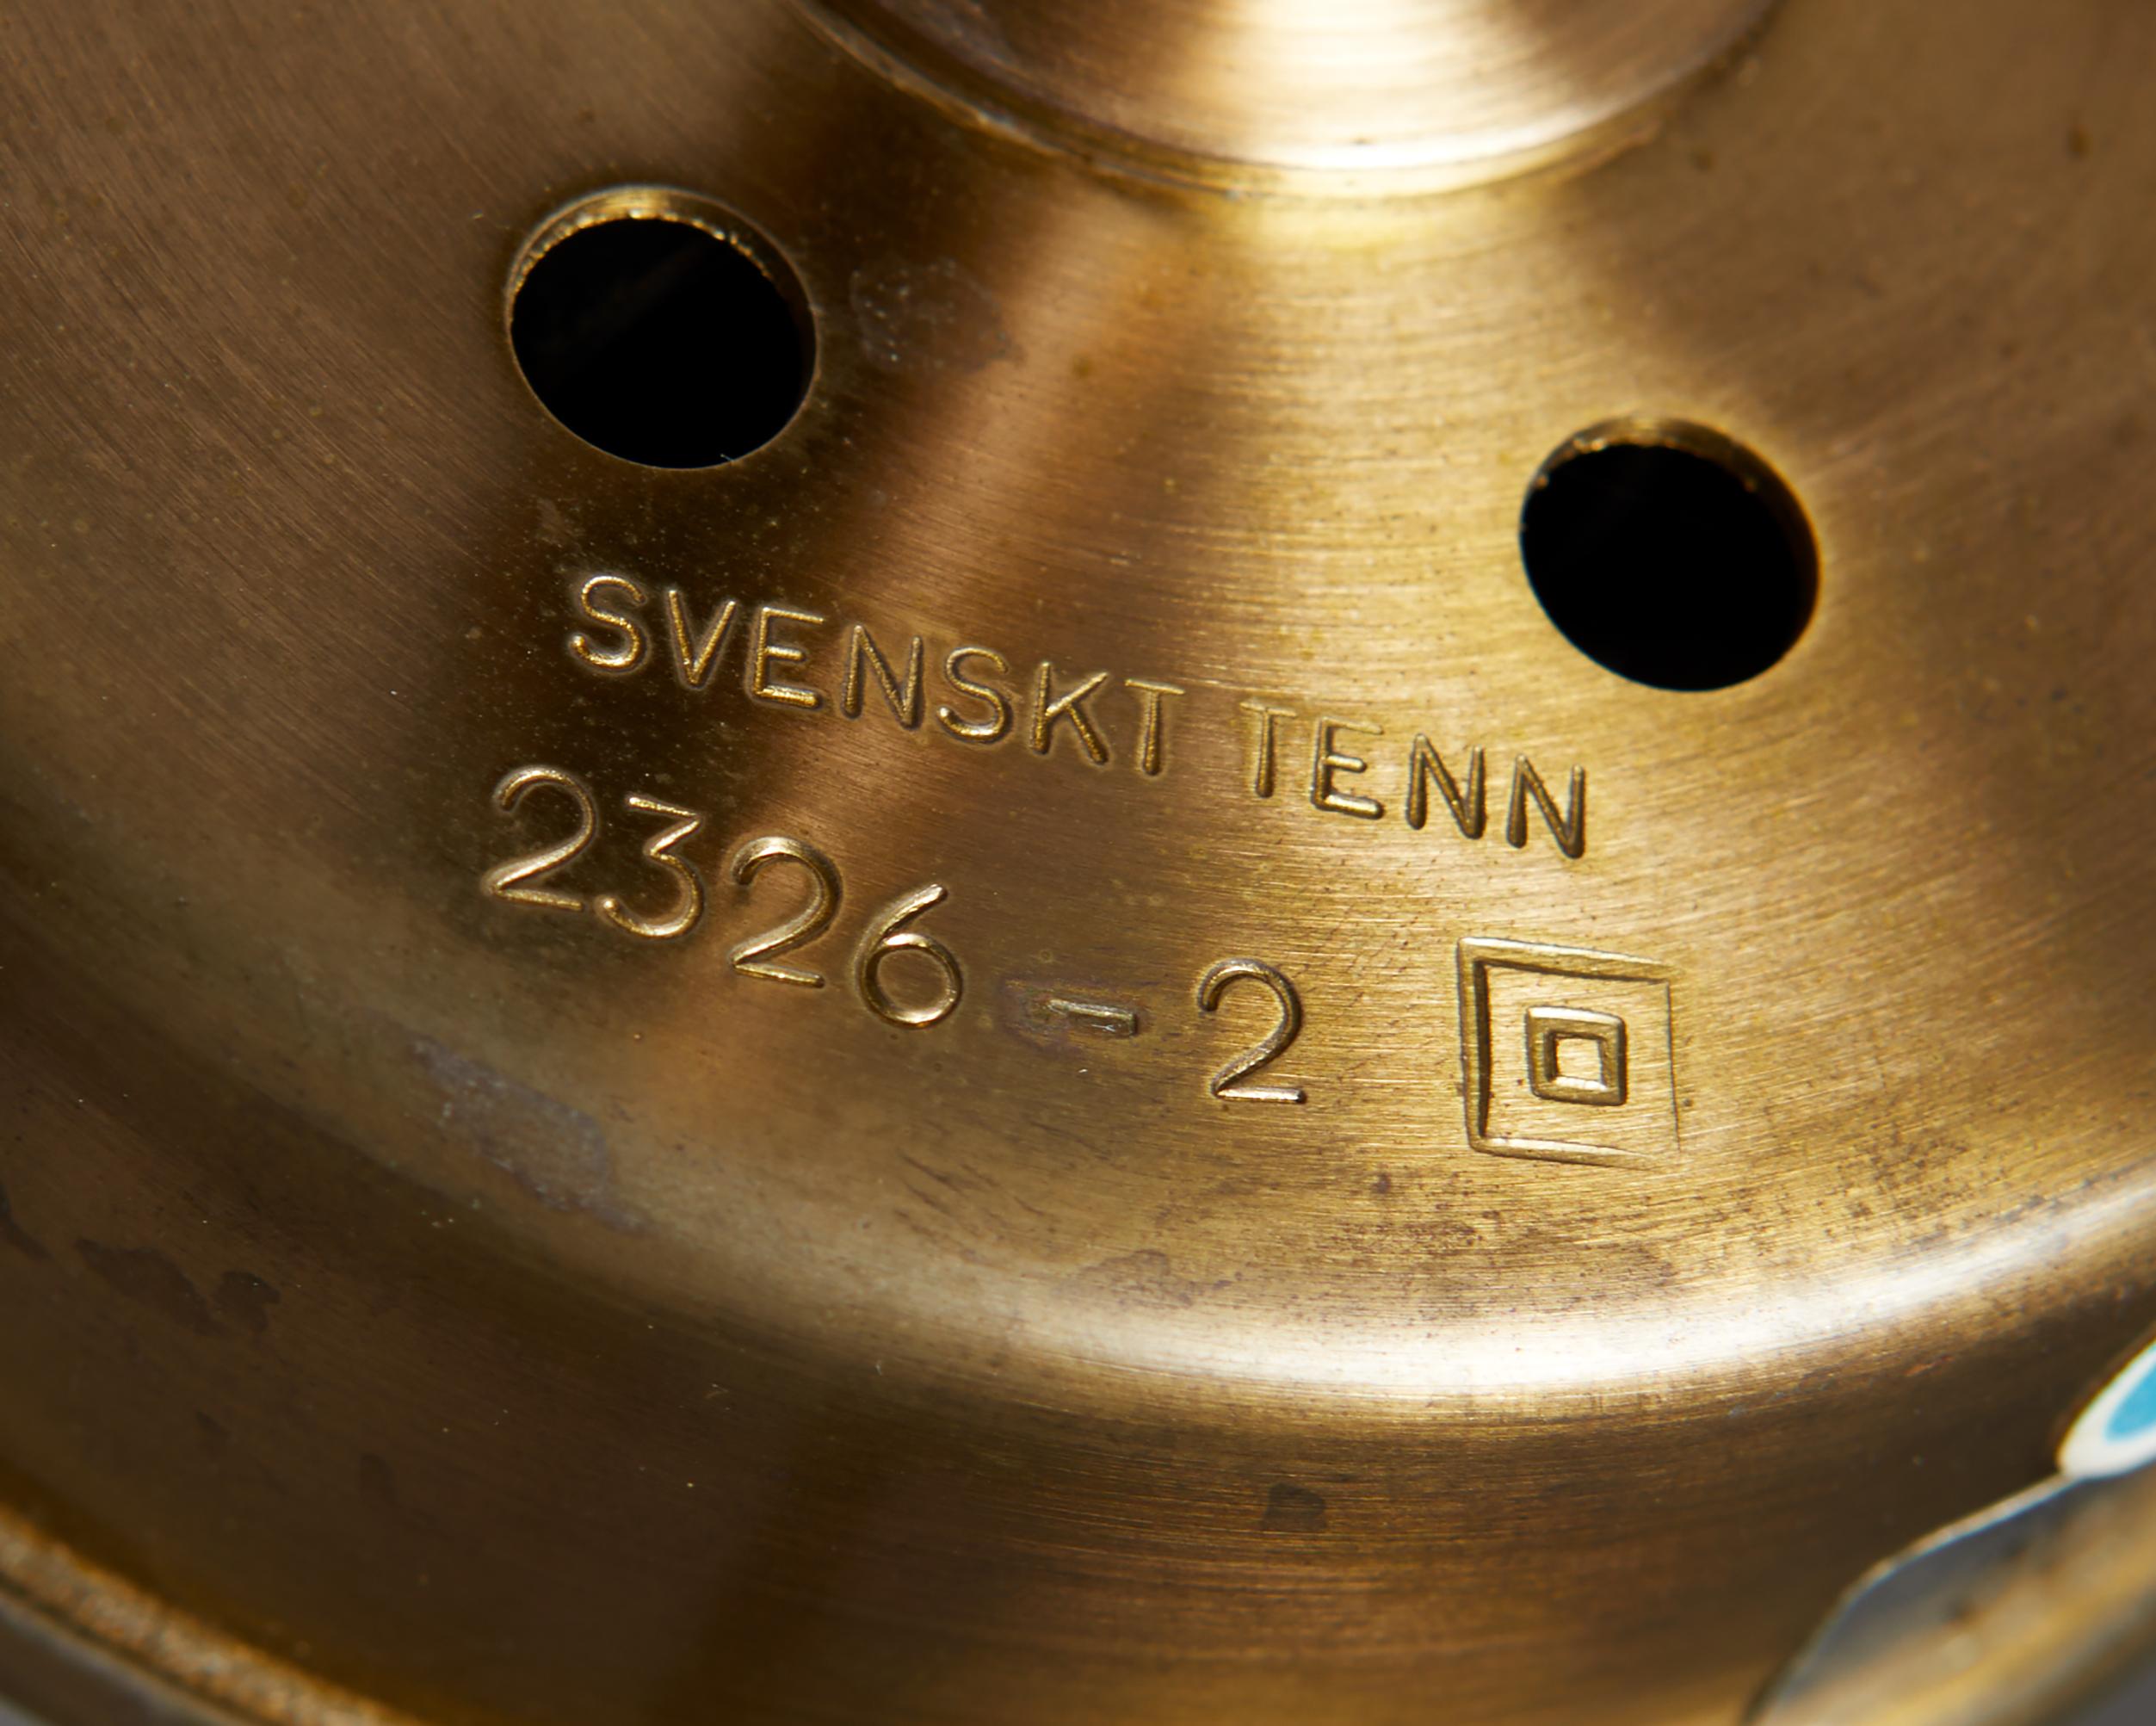 20th Century Pair of Floor Lamps Model 2326 Designed by Josef Frank for Svenskt Tenn, Sweden